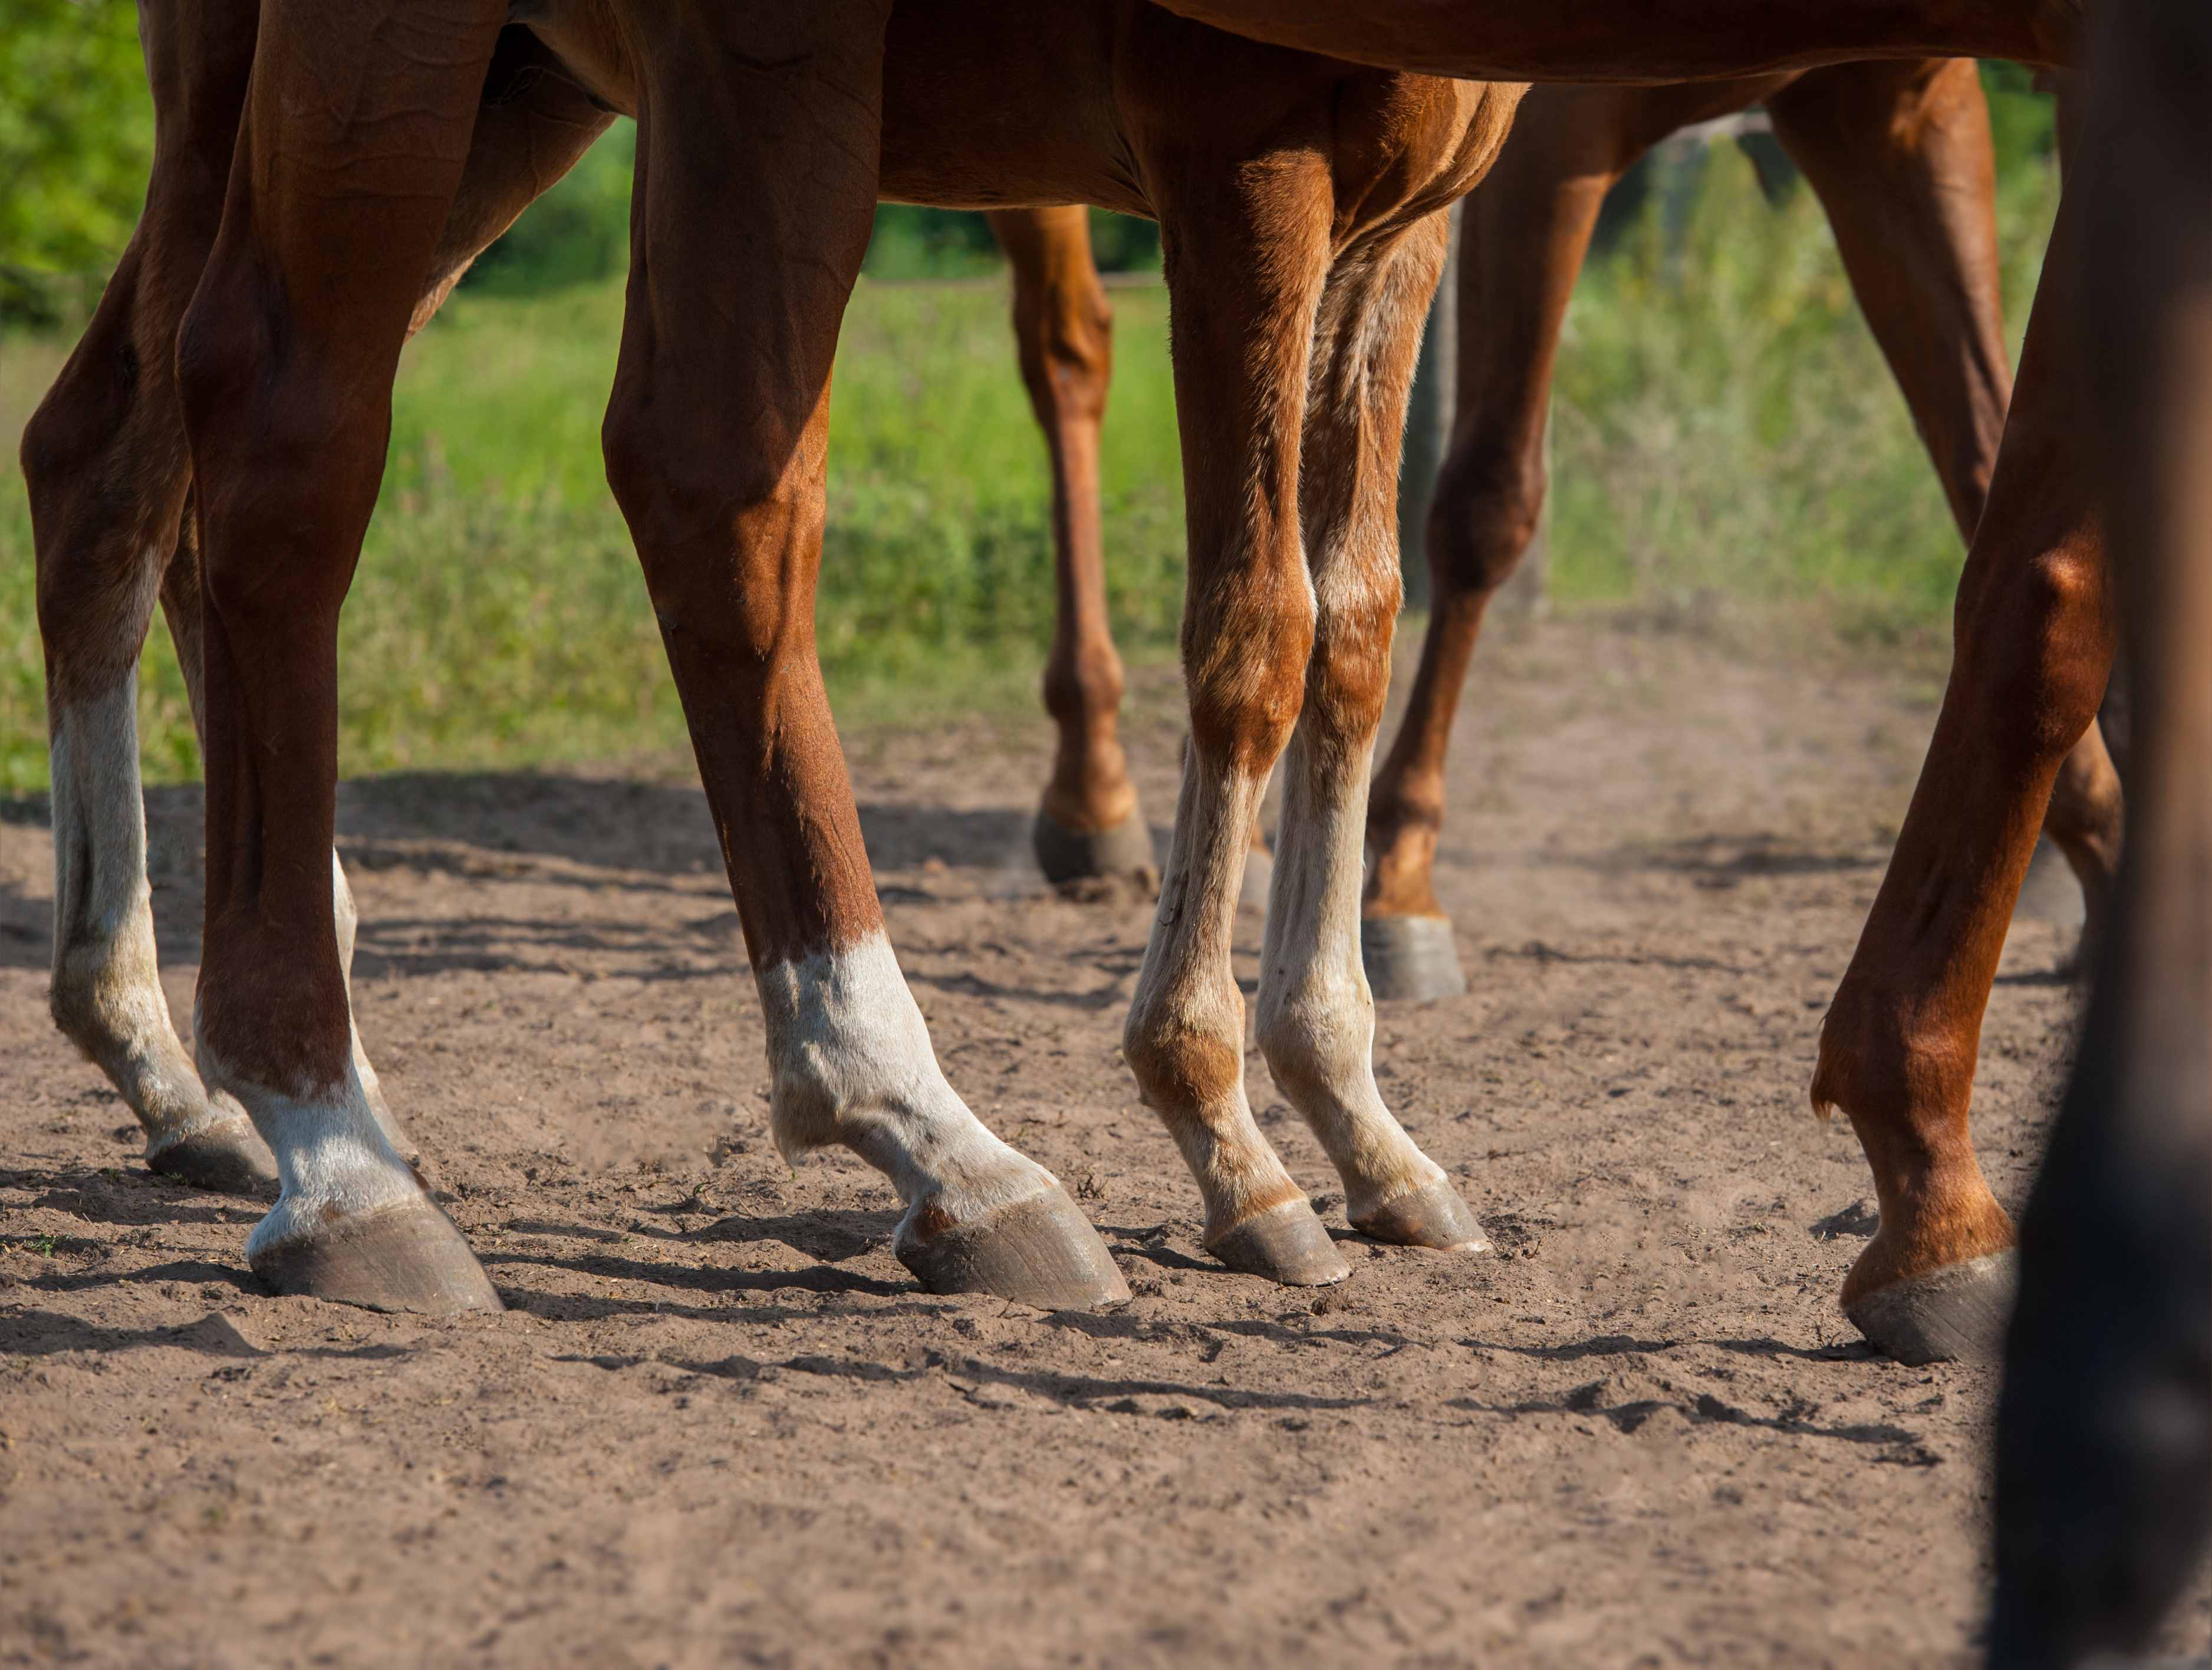 horses' feet